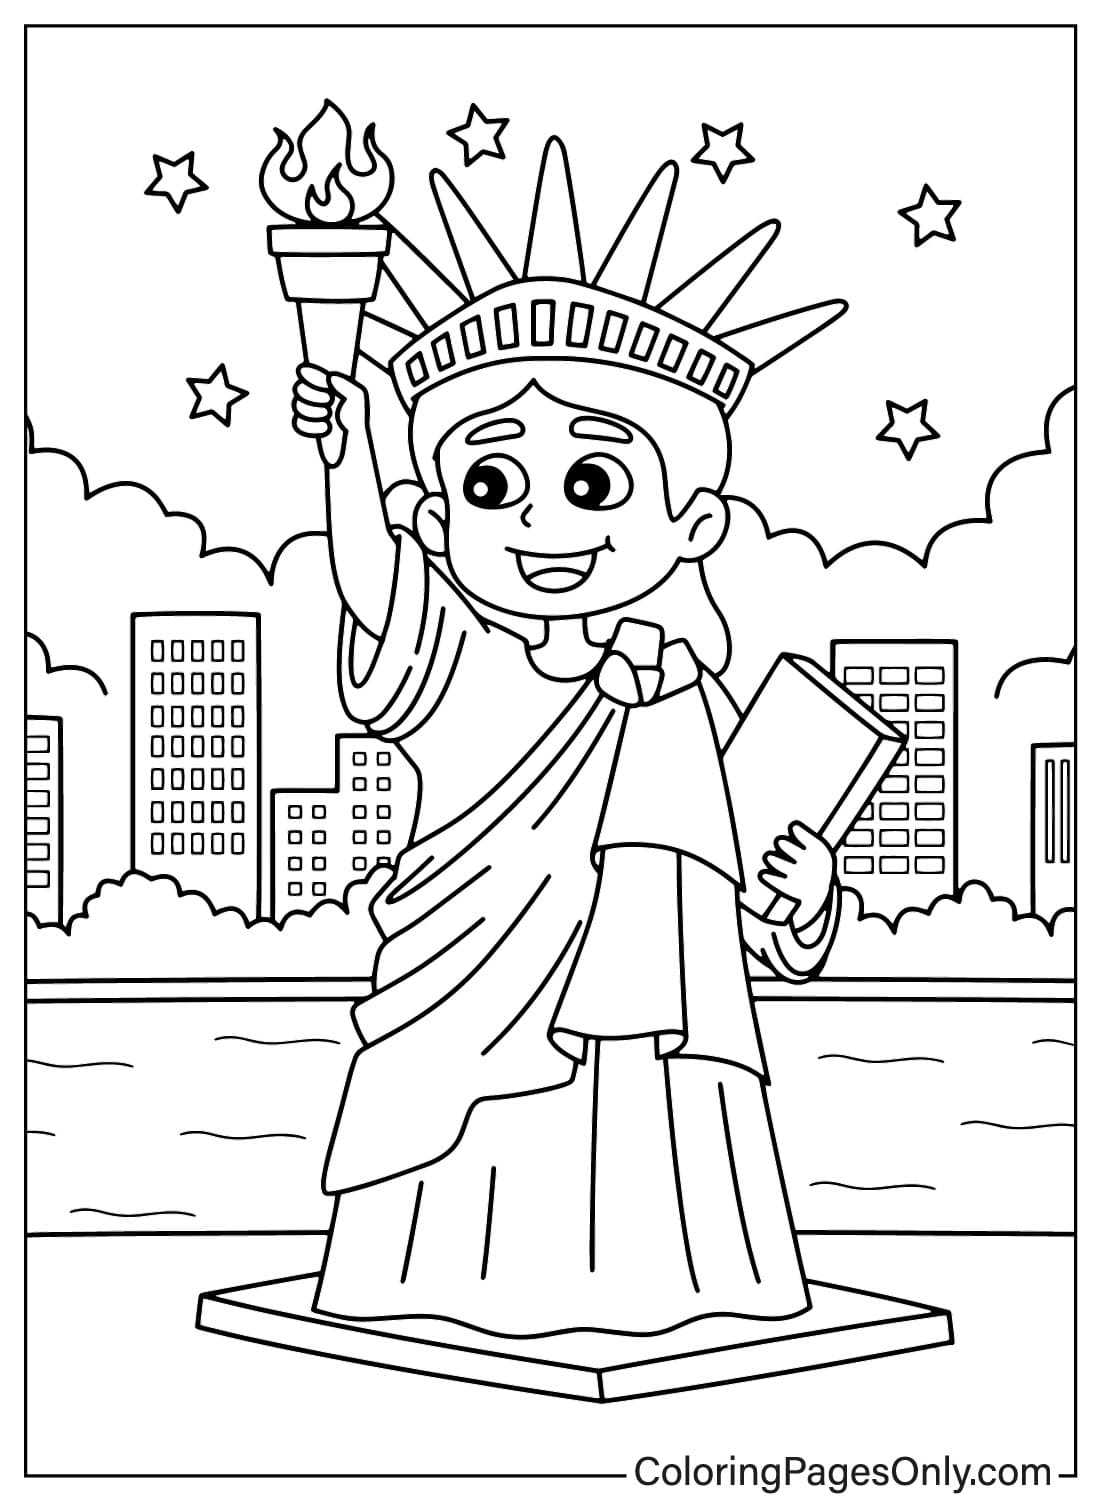 Página para colorear Kawaii de la Estatua de la Libertad para niños de Estatua de la Libertad